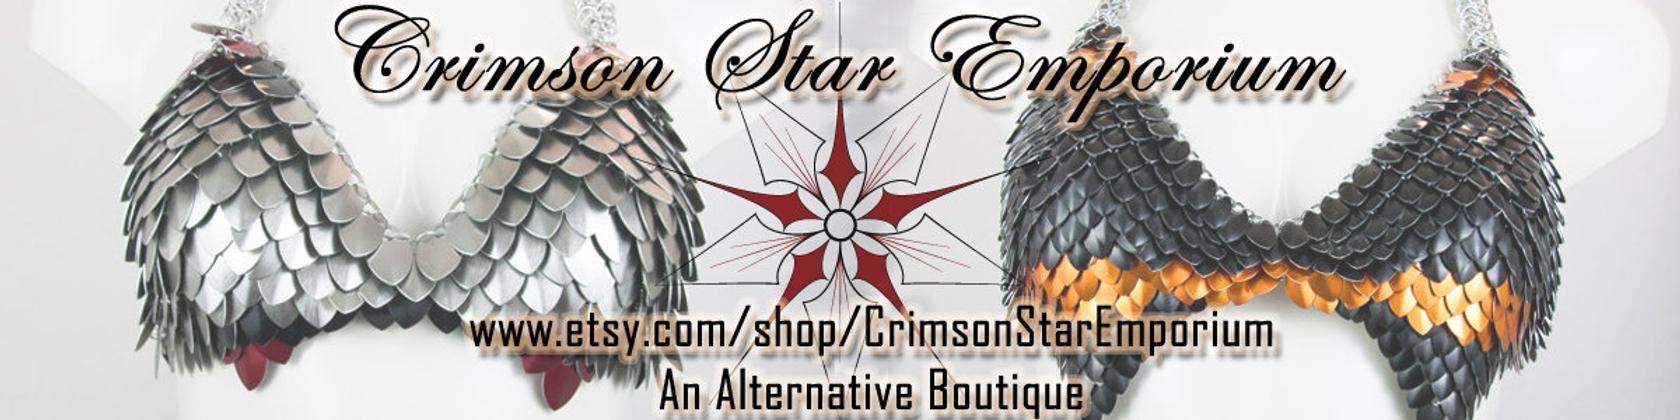 Crimson Star Logo - Crimson Star Emporium